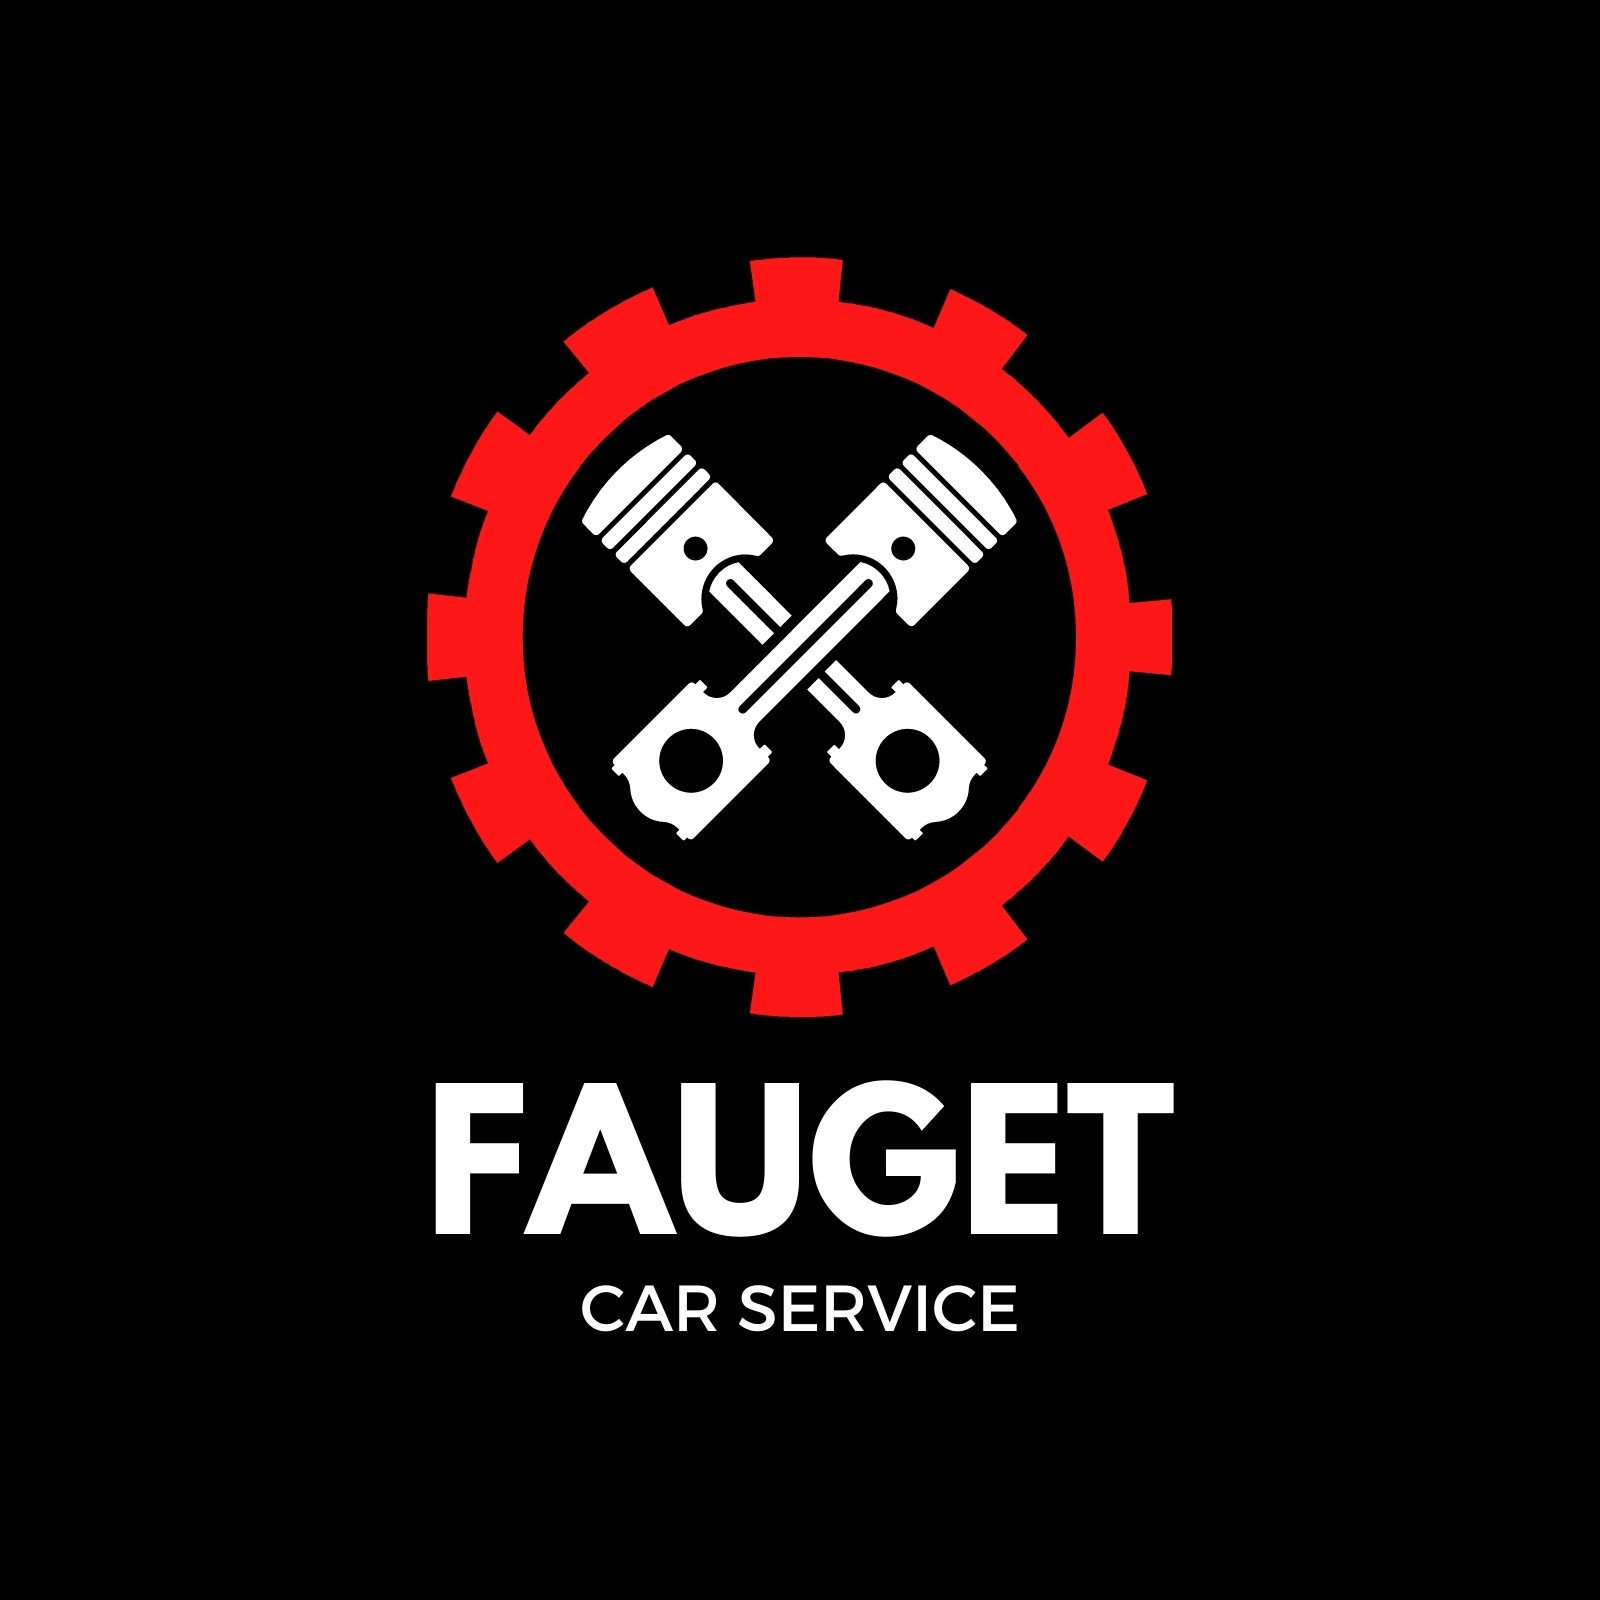 Car service icon vehicle maintenance, auto repair or mechanic garage. Automobile  repair shop or automotive workshop